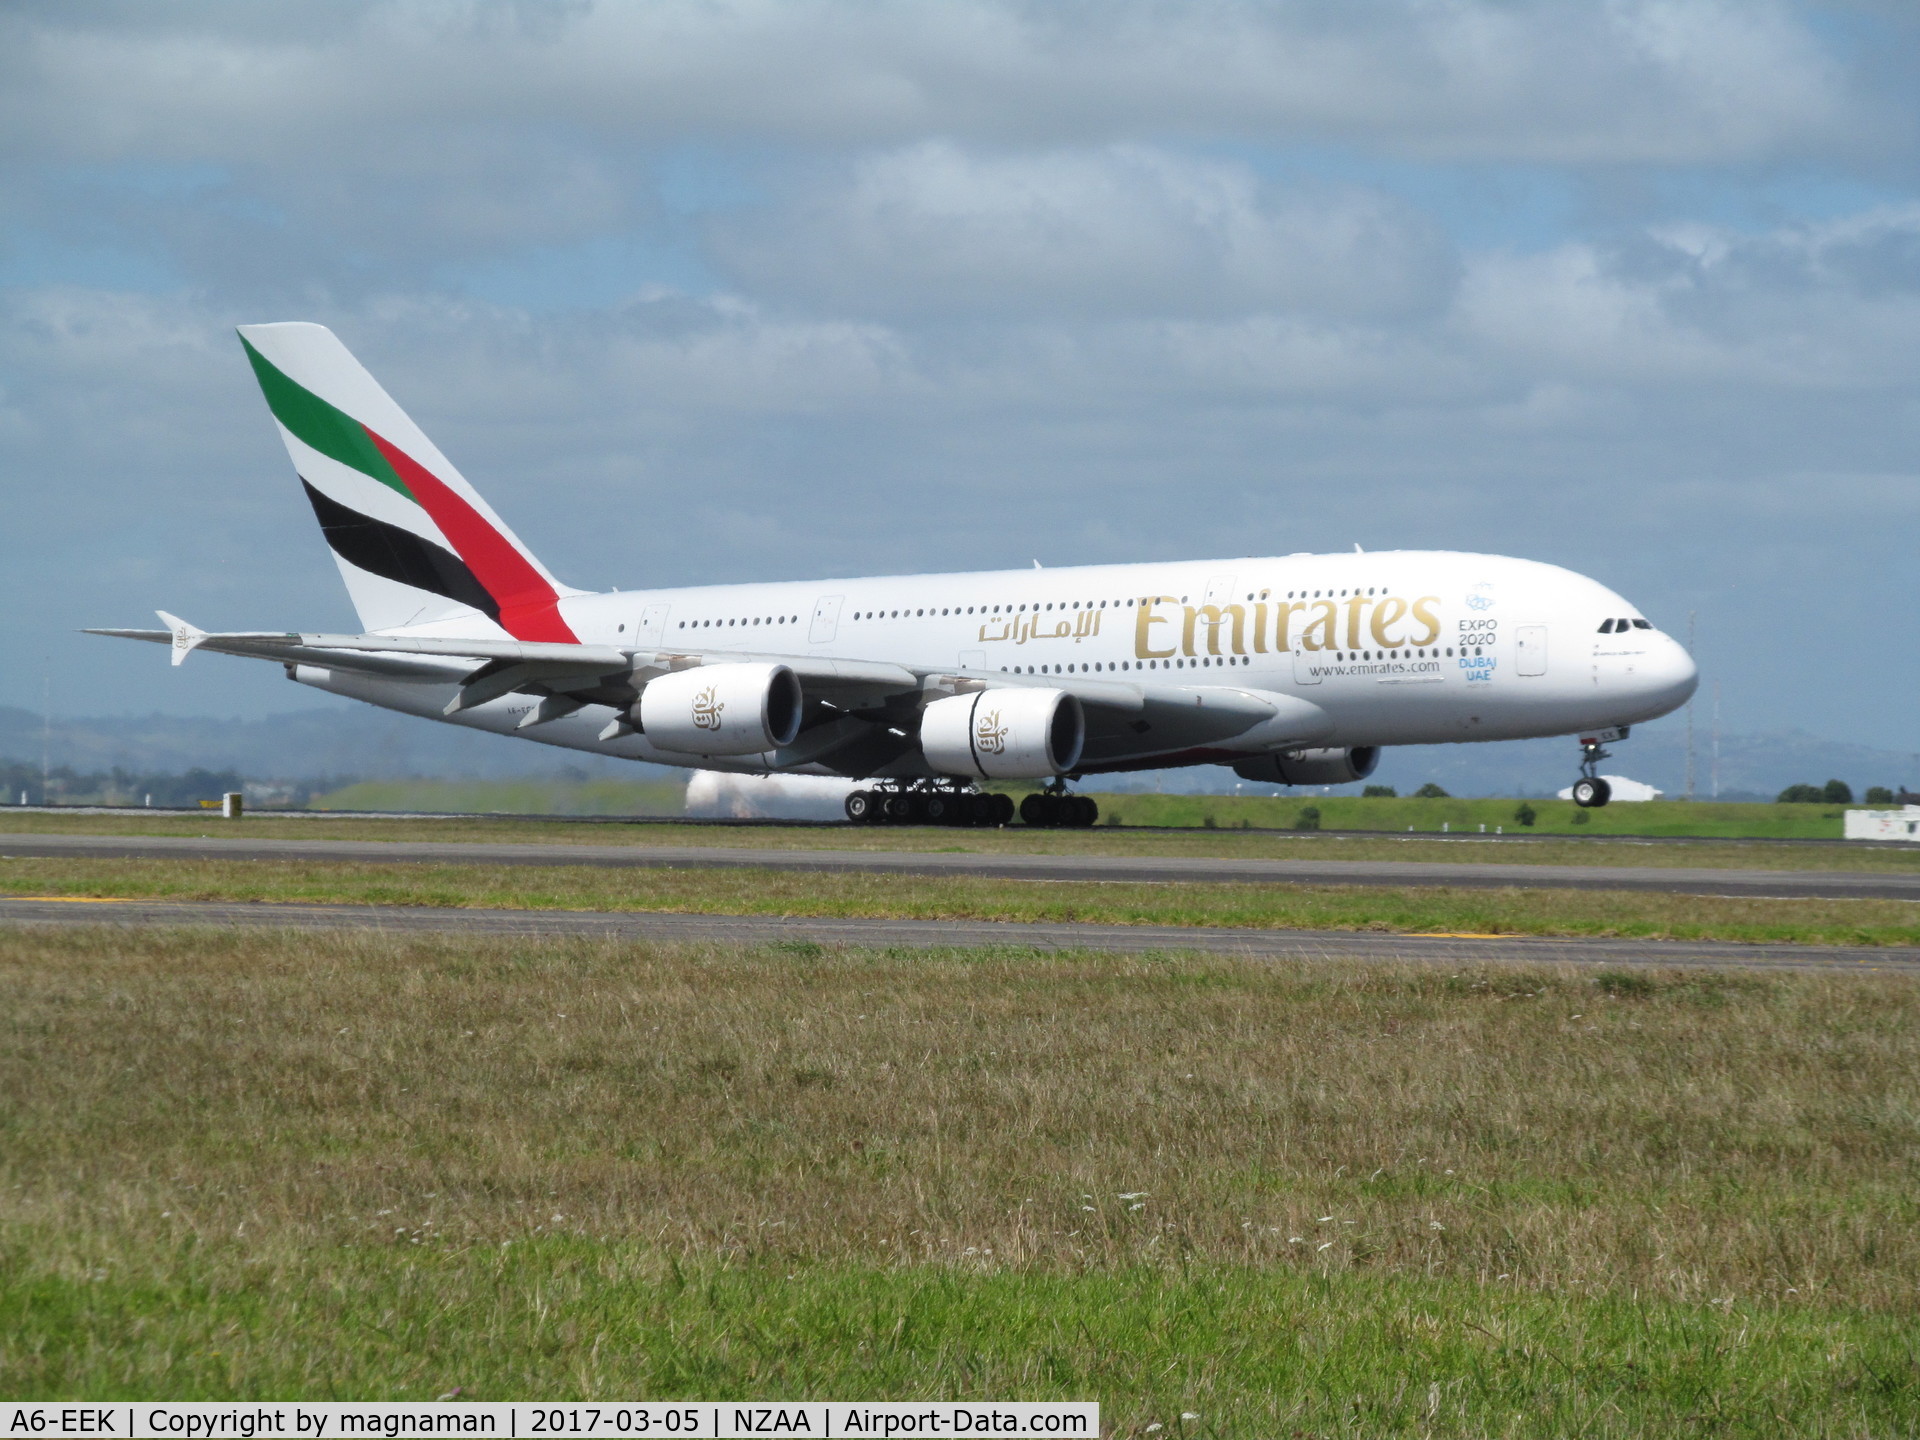 A6-EEK, 2013 Airbus A380-861 C/N 132, touchdown